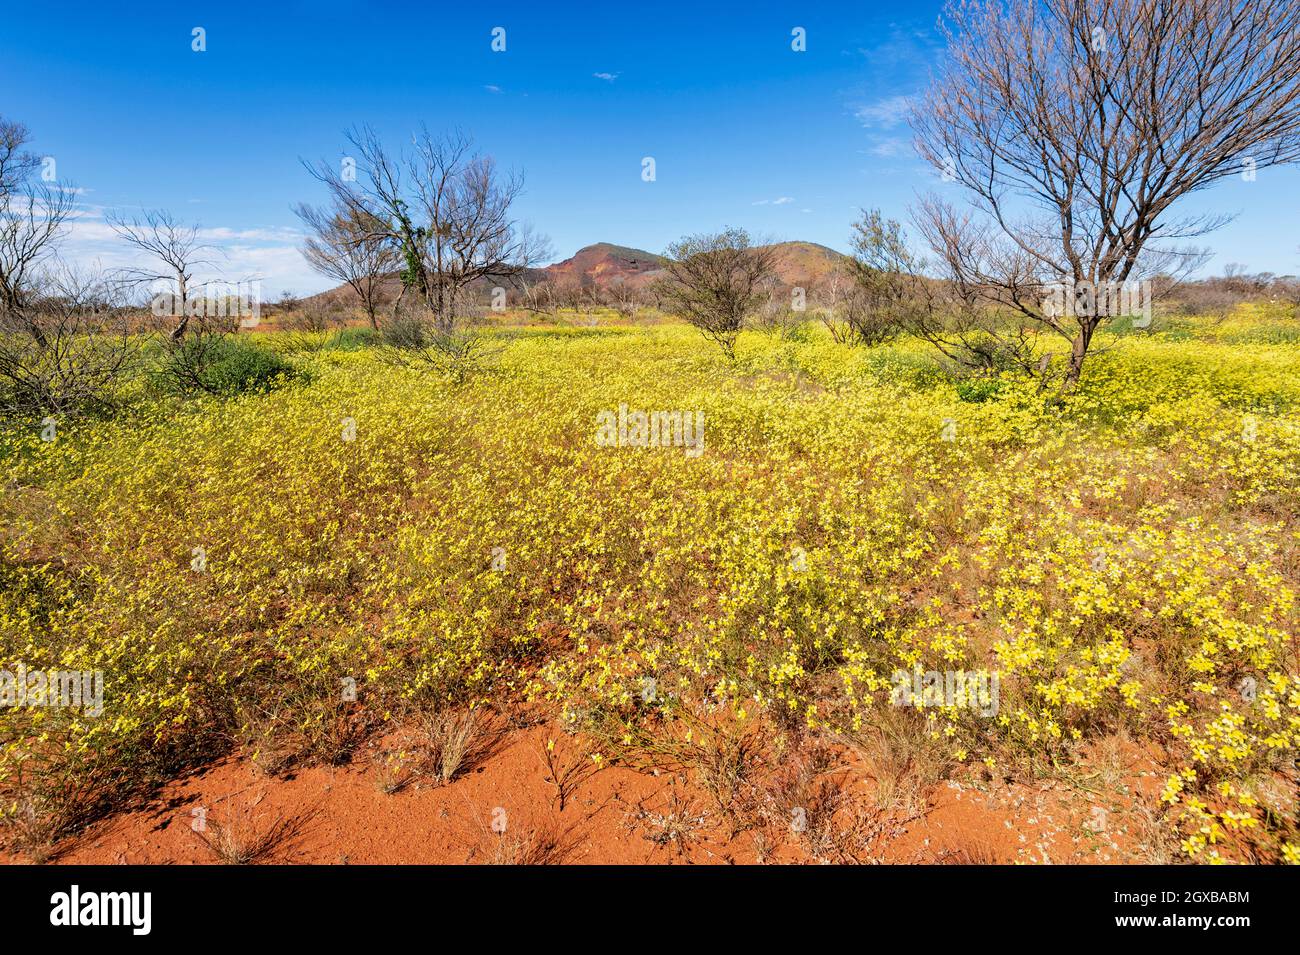 Exposition spectaculaire de fleurs sauvages jaunes pendant la floraison du désert au printemps dans l'Outback australien, Mt Gould, Meekatharra Shire, Australie occidentale, WA, Banque D'Images